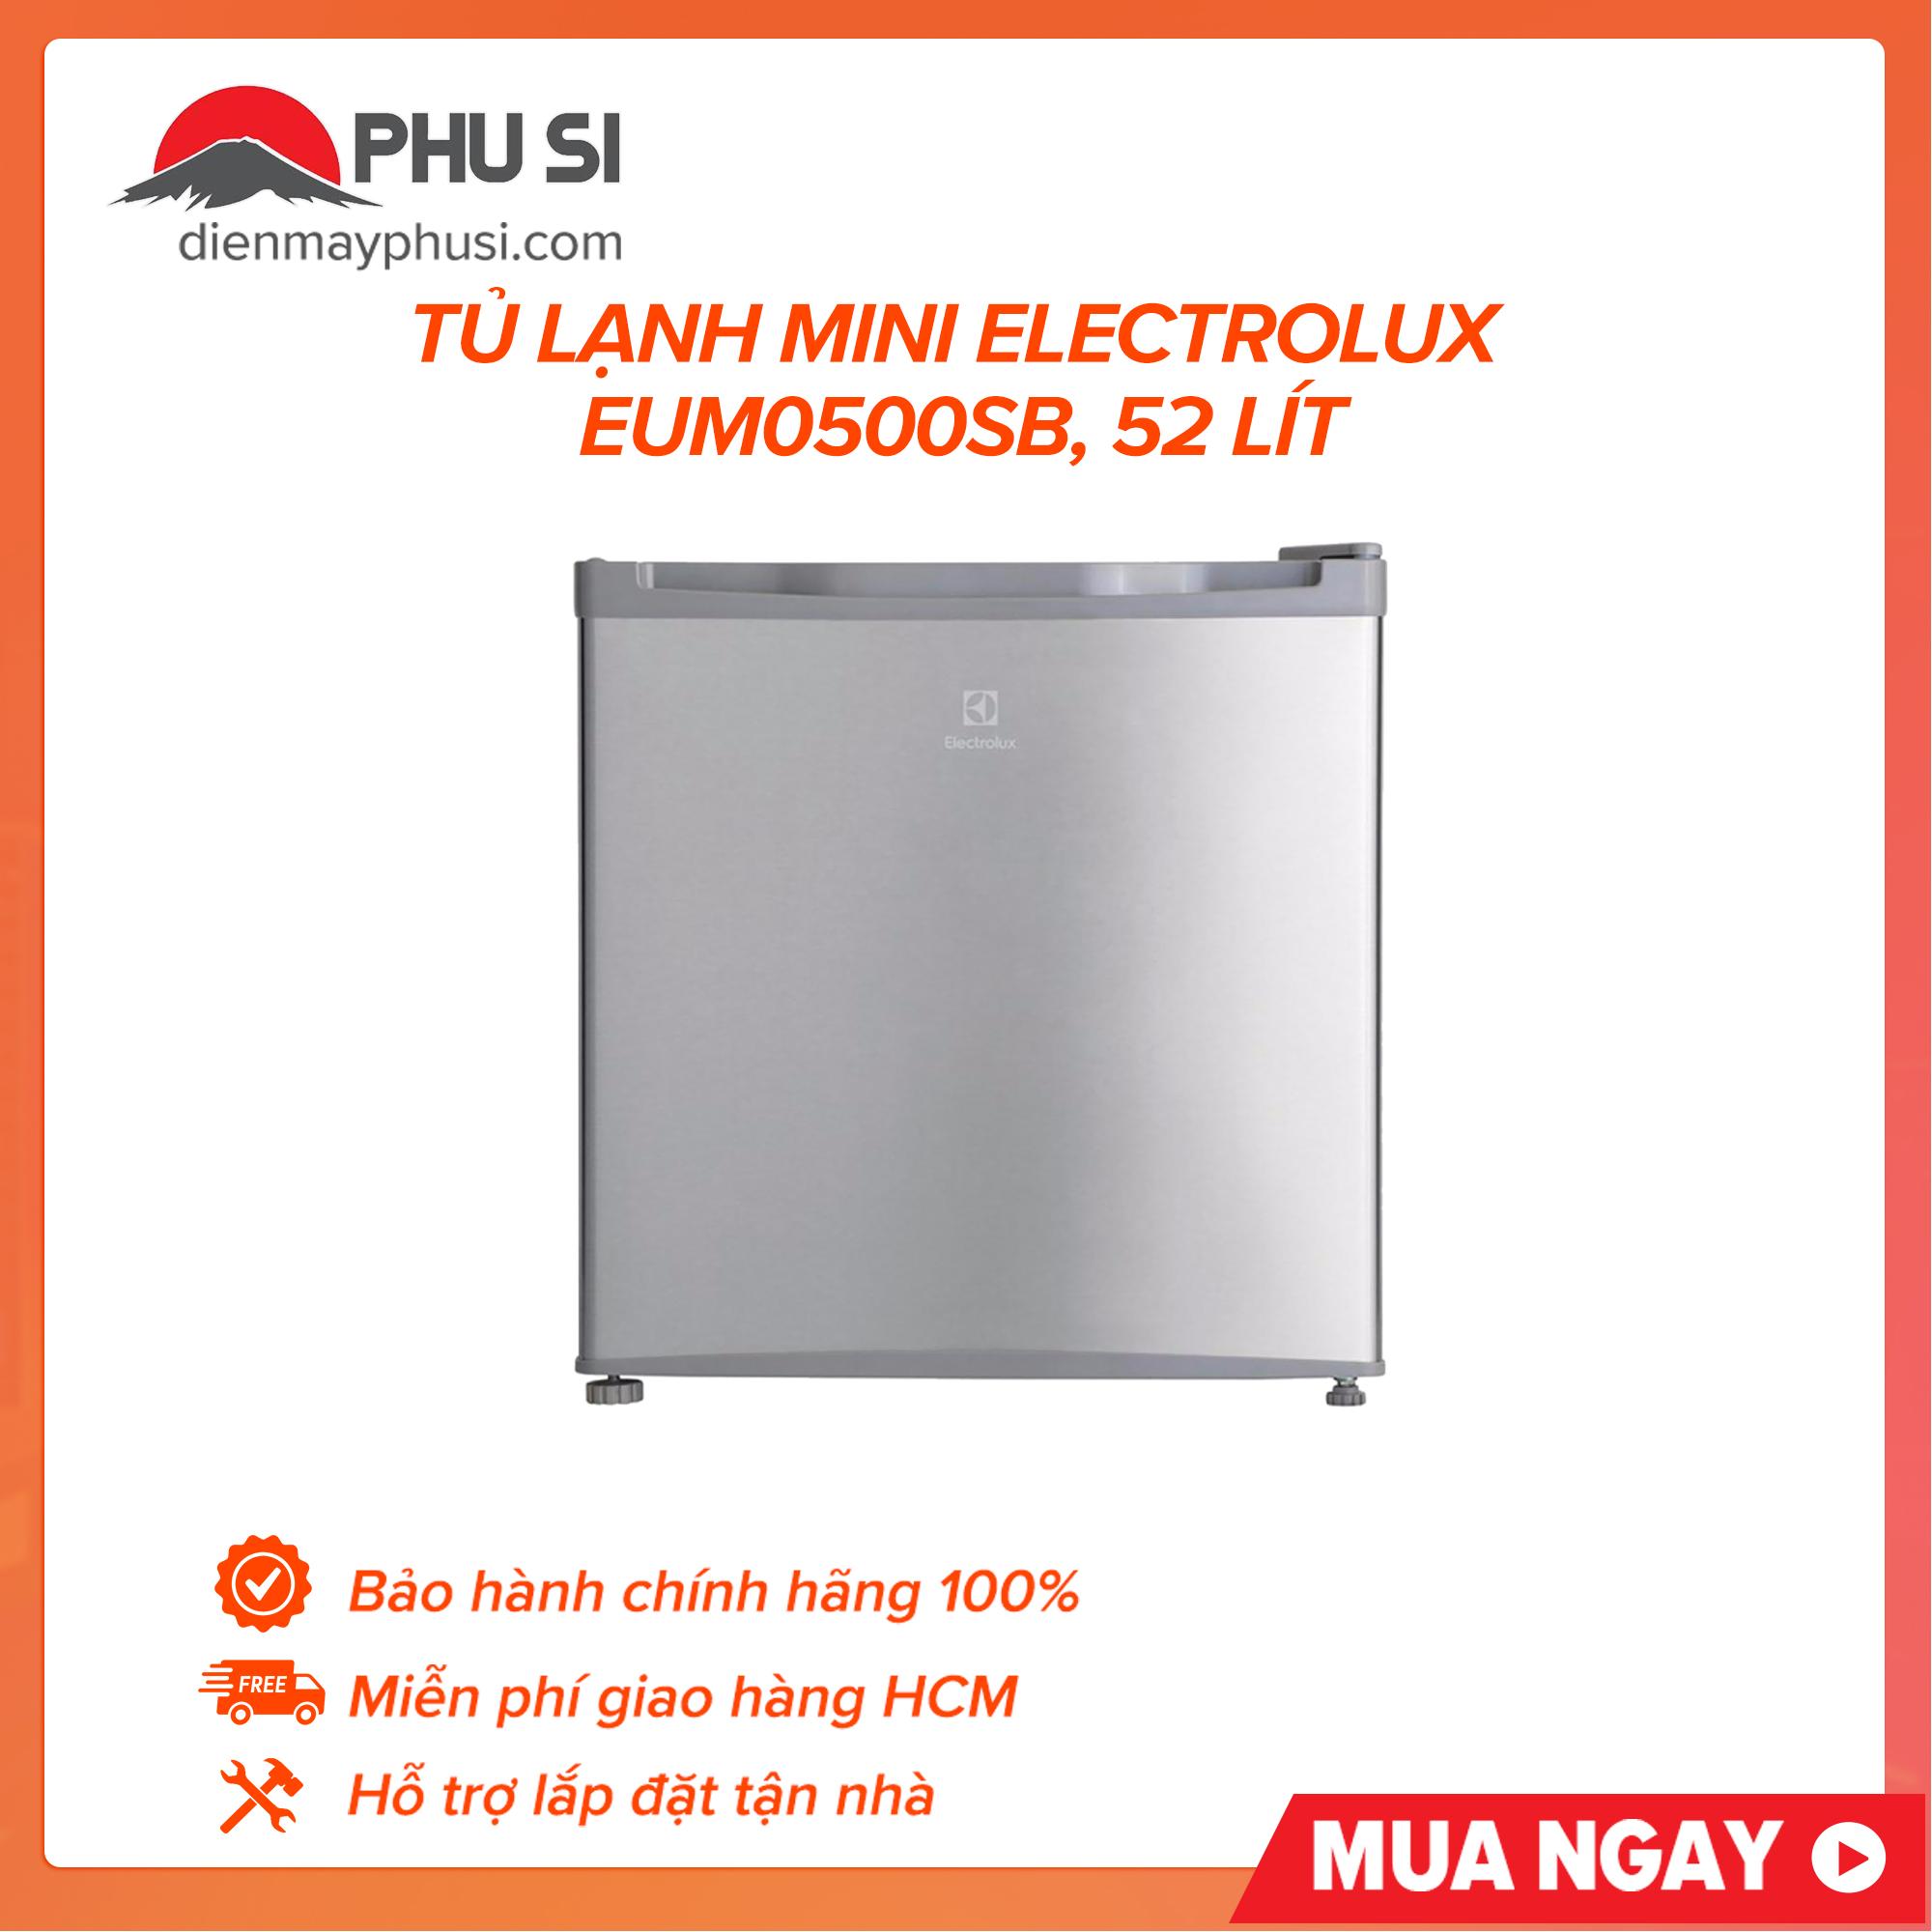 Tủ lạnh mini Electrolux EUM0500SB, 52 lít